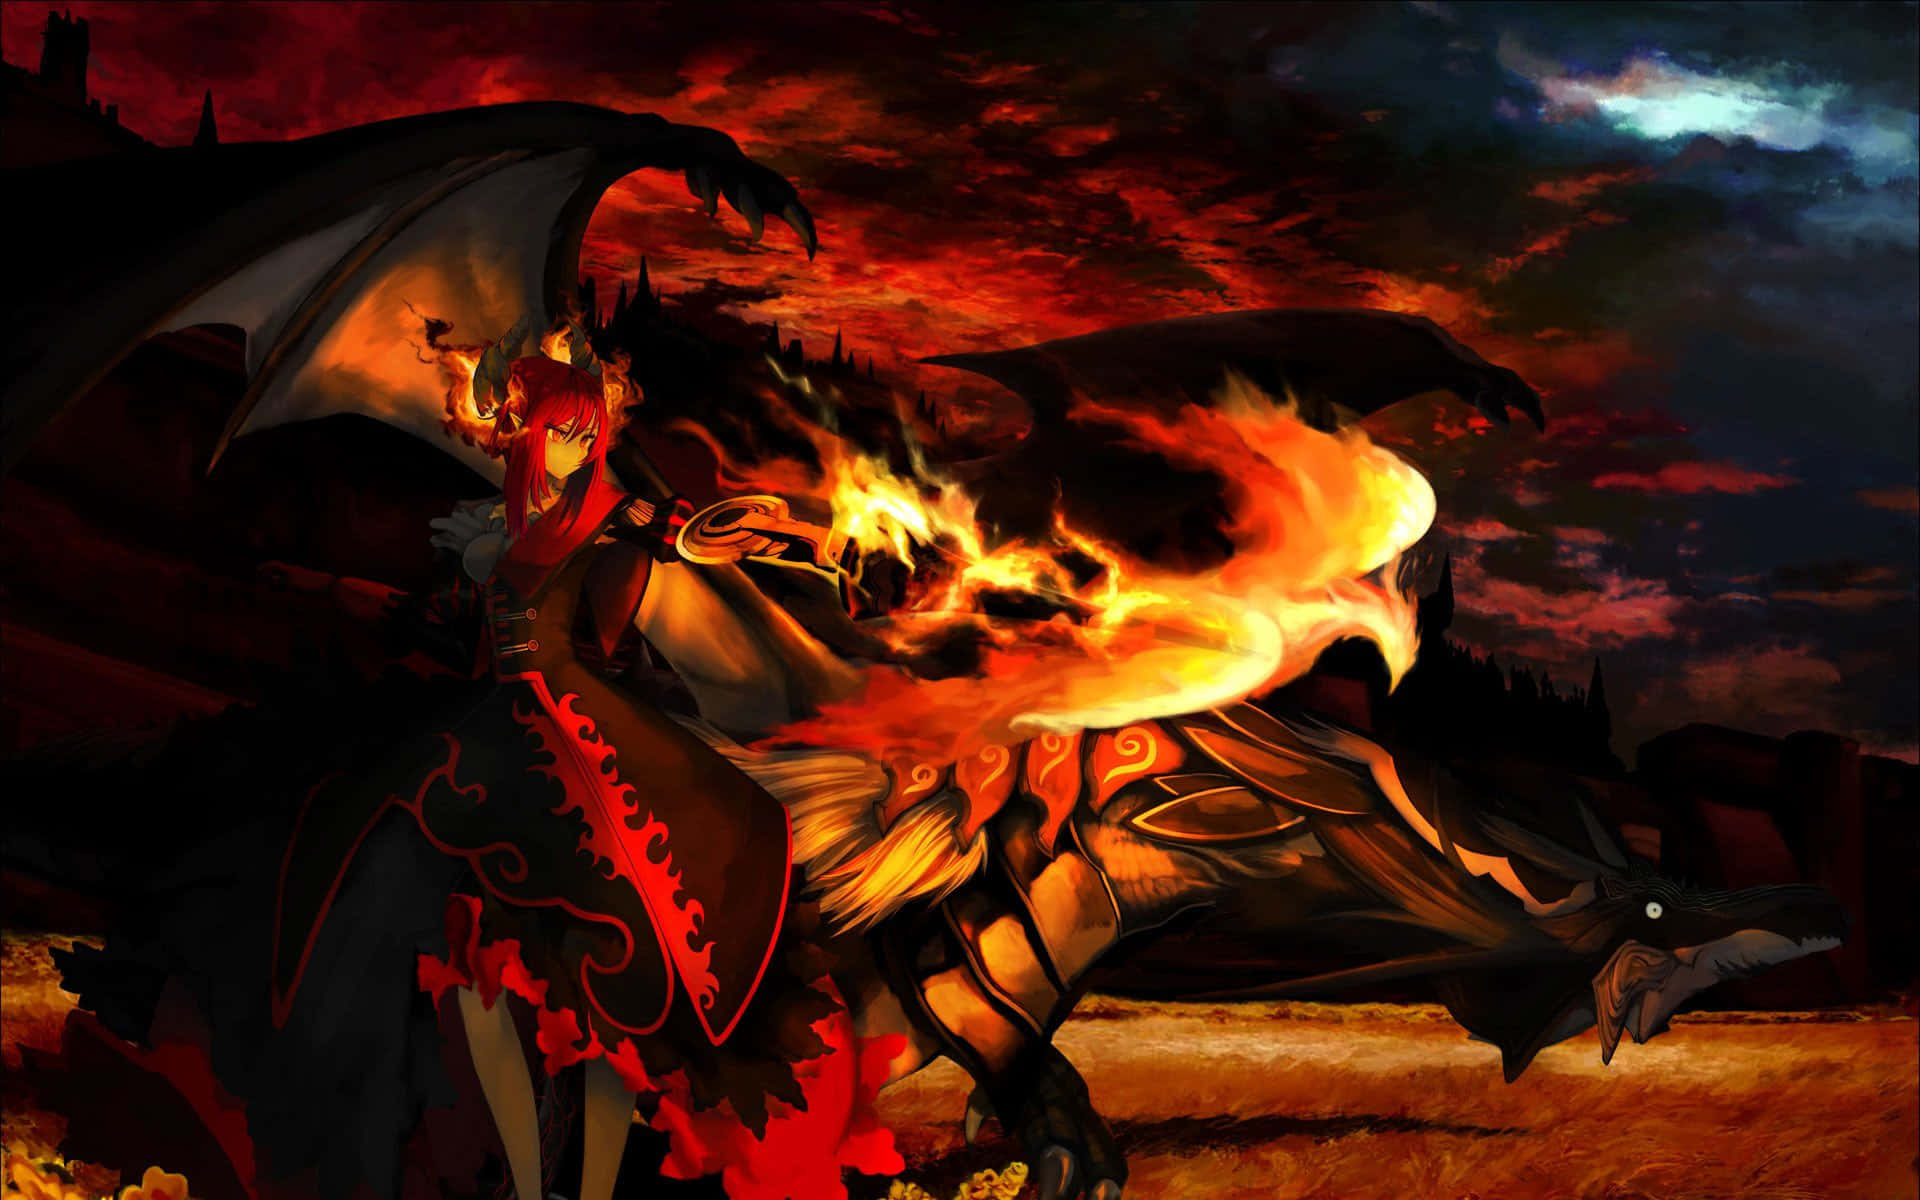 En surreal anime verden af flammer og stigende væsener. Wallpaper